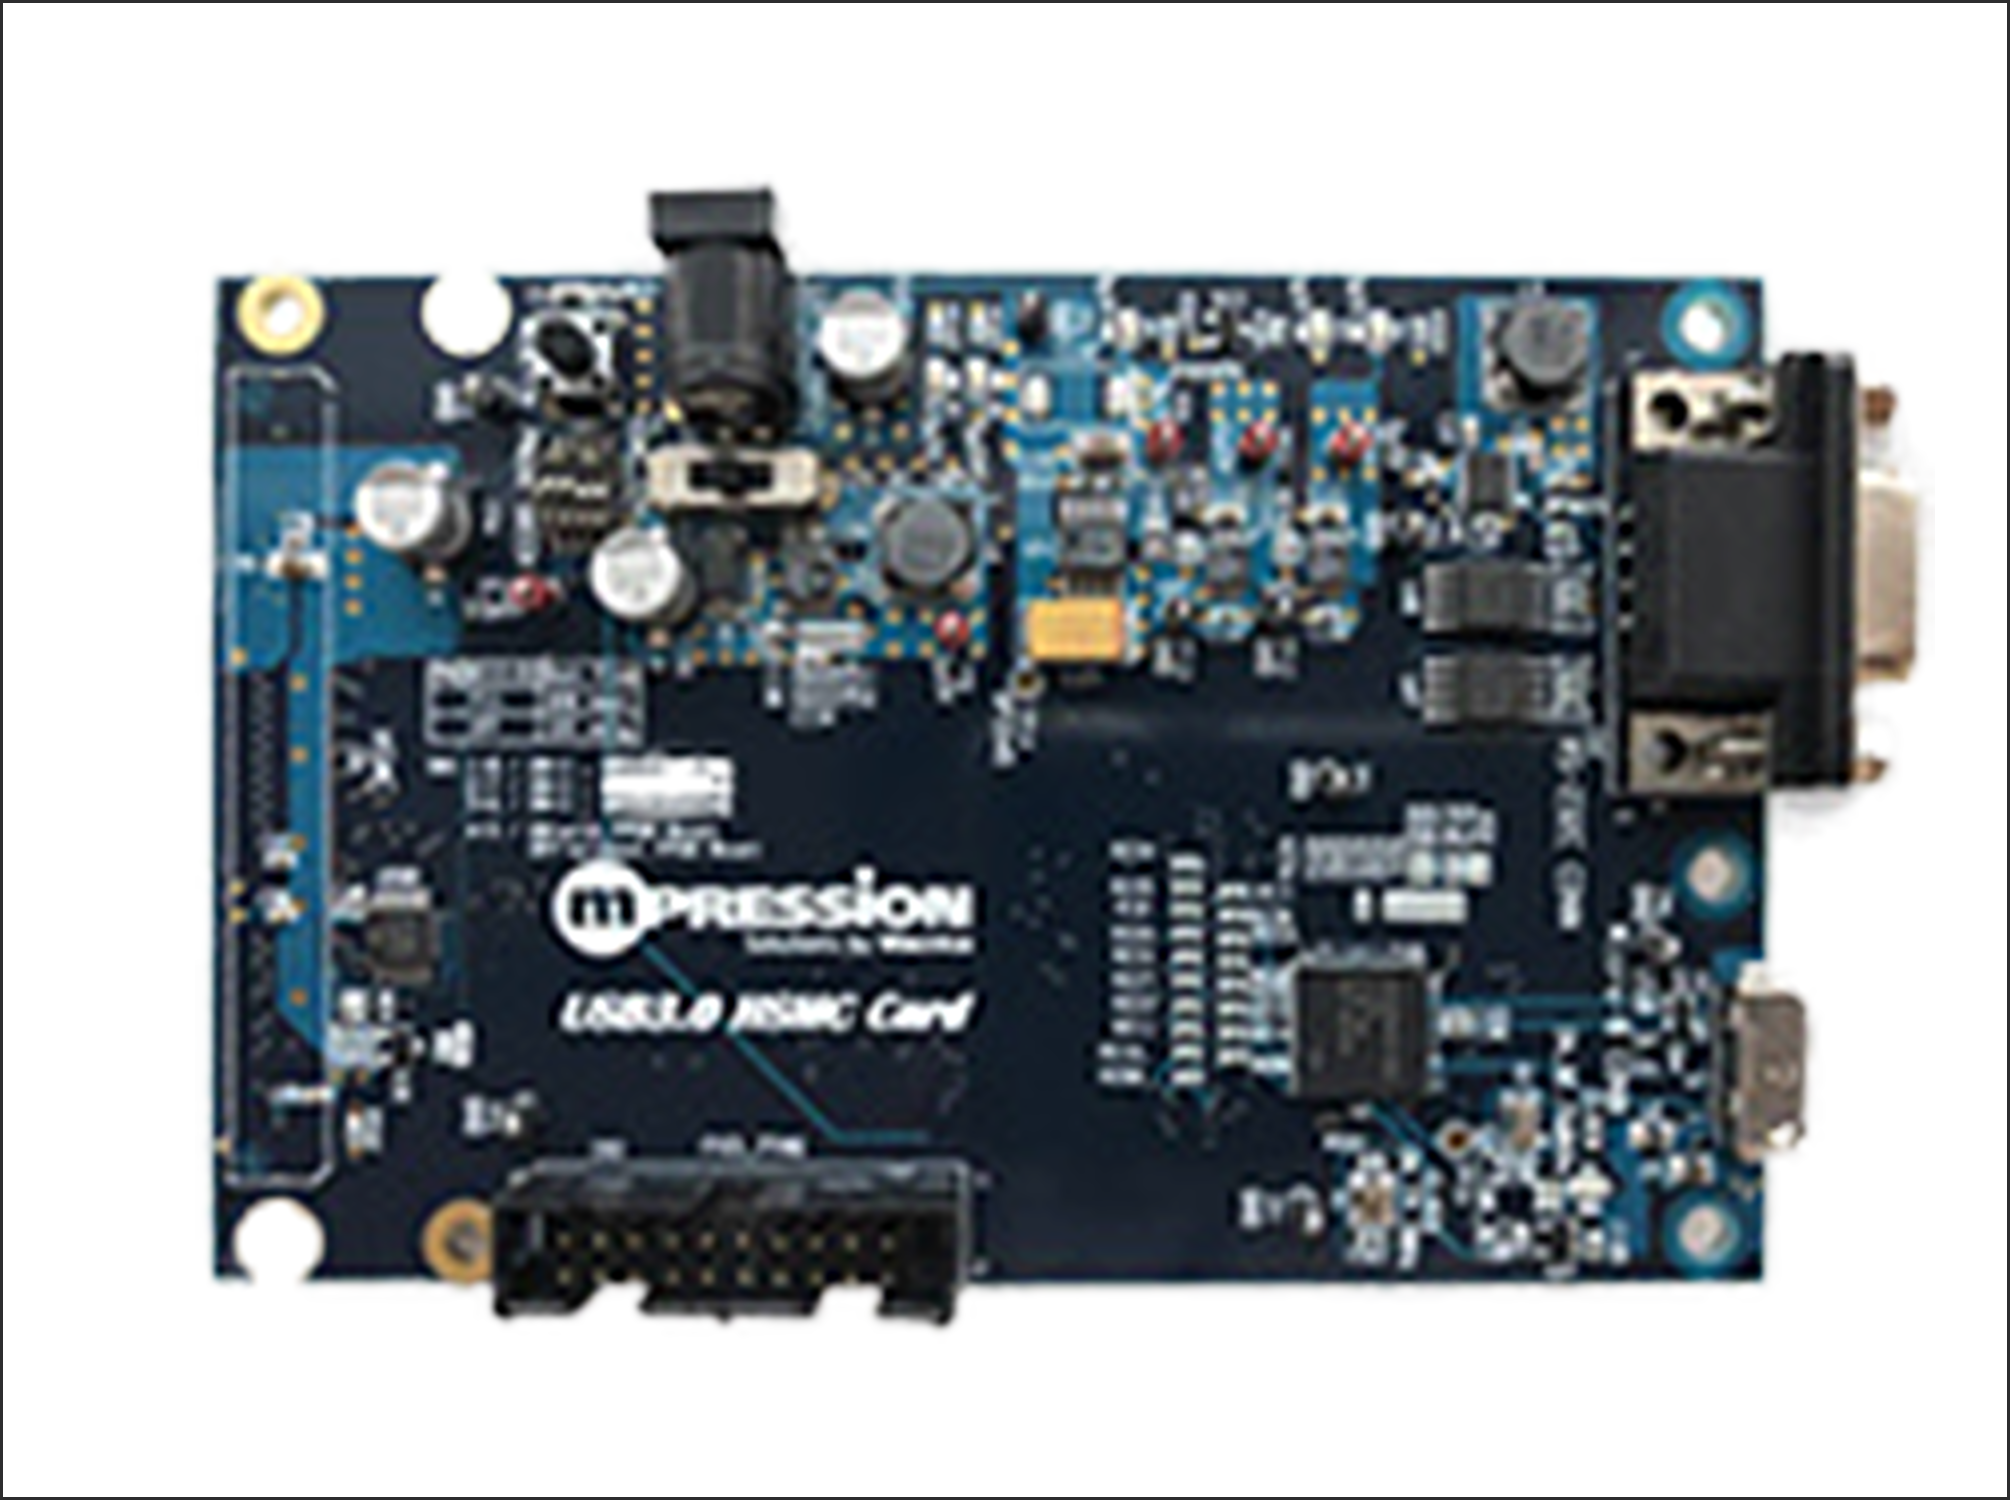 USB 3.0 HSMC Card